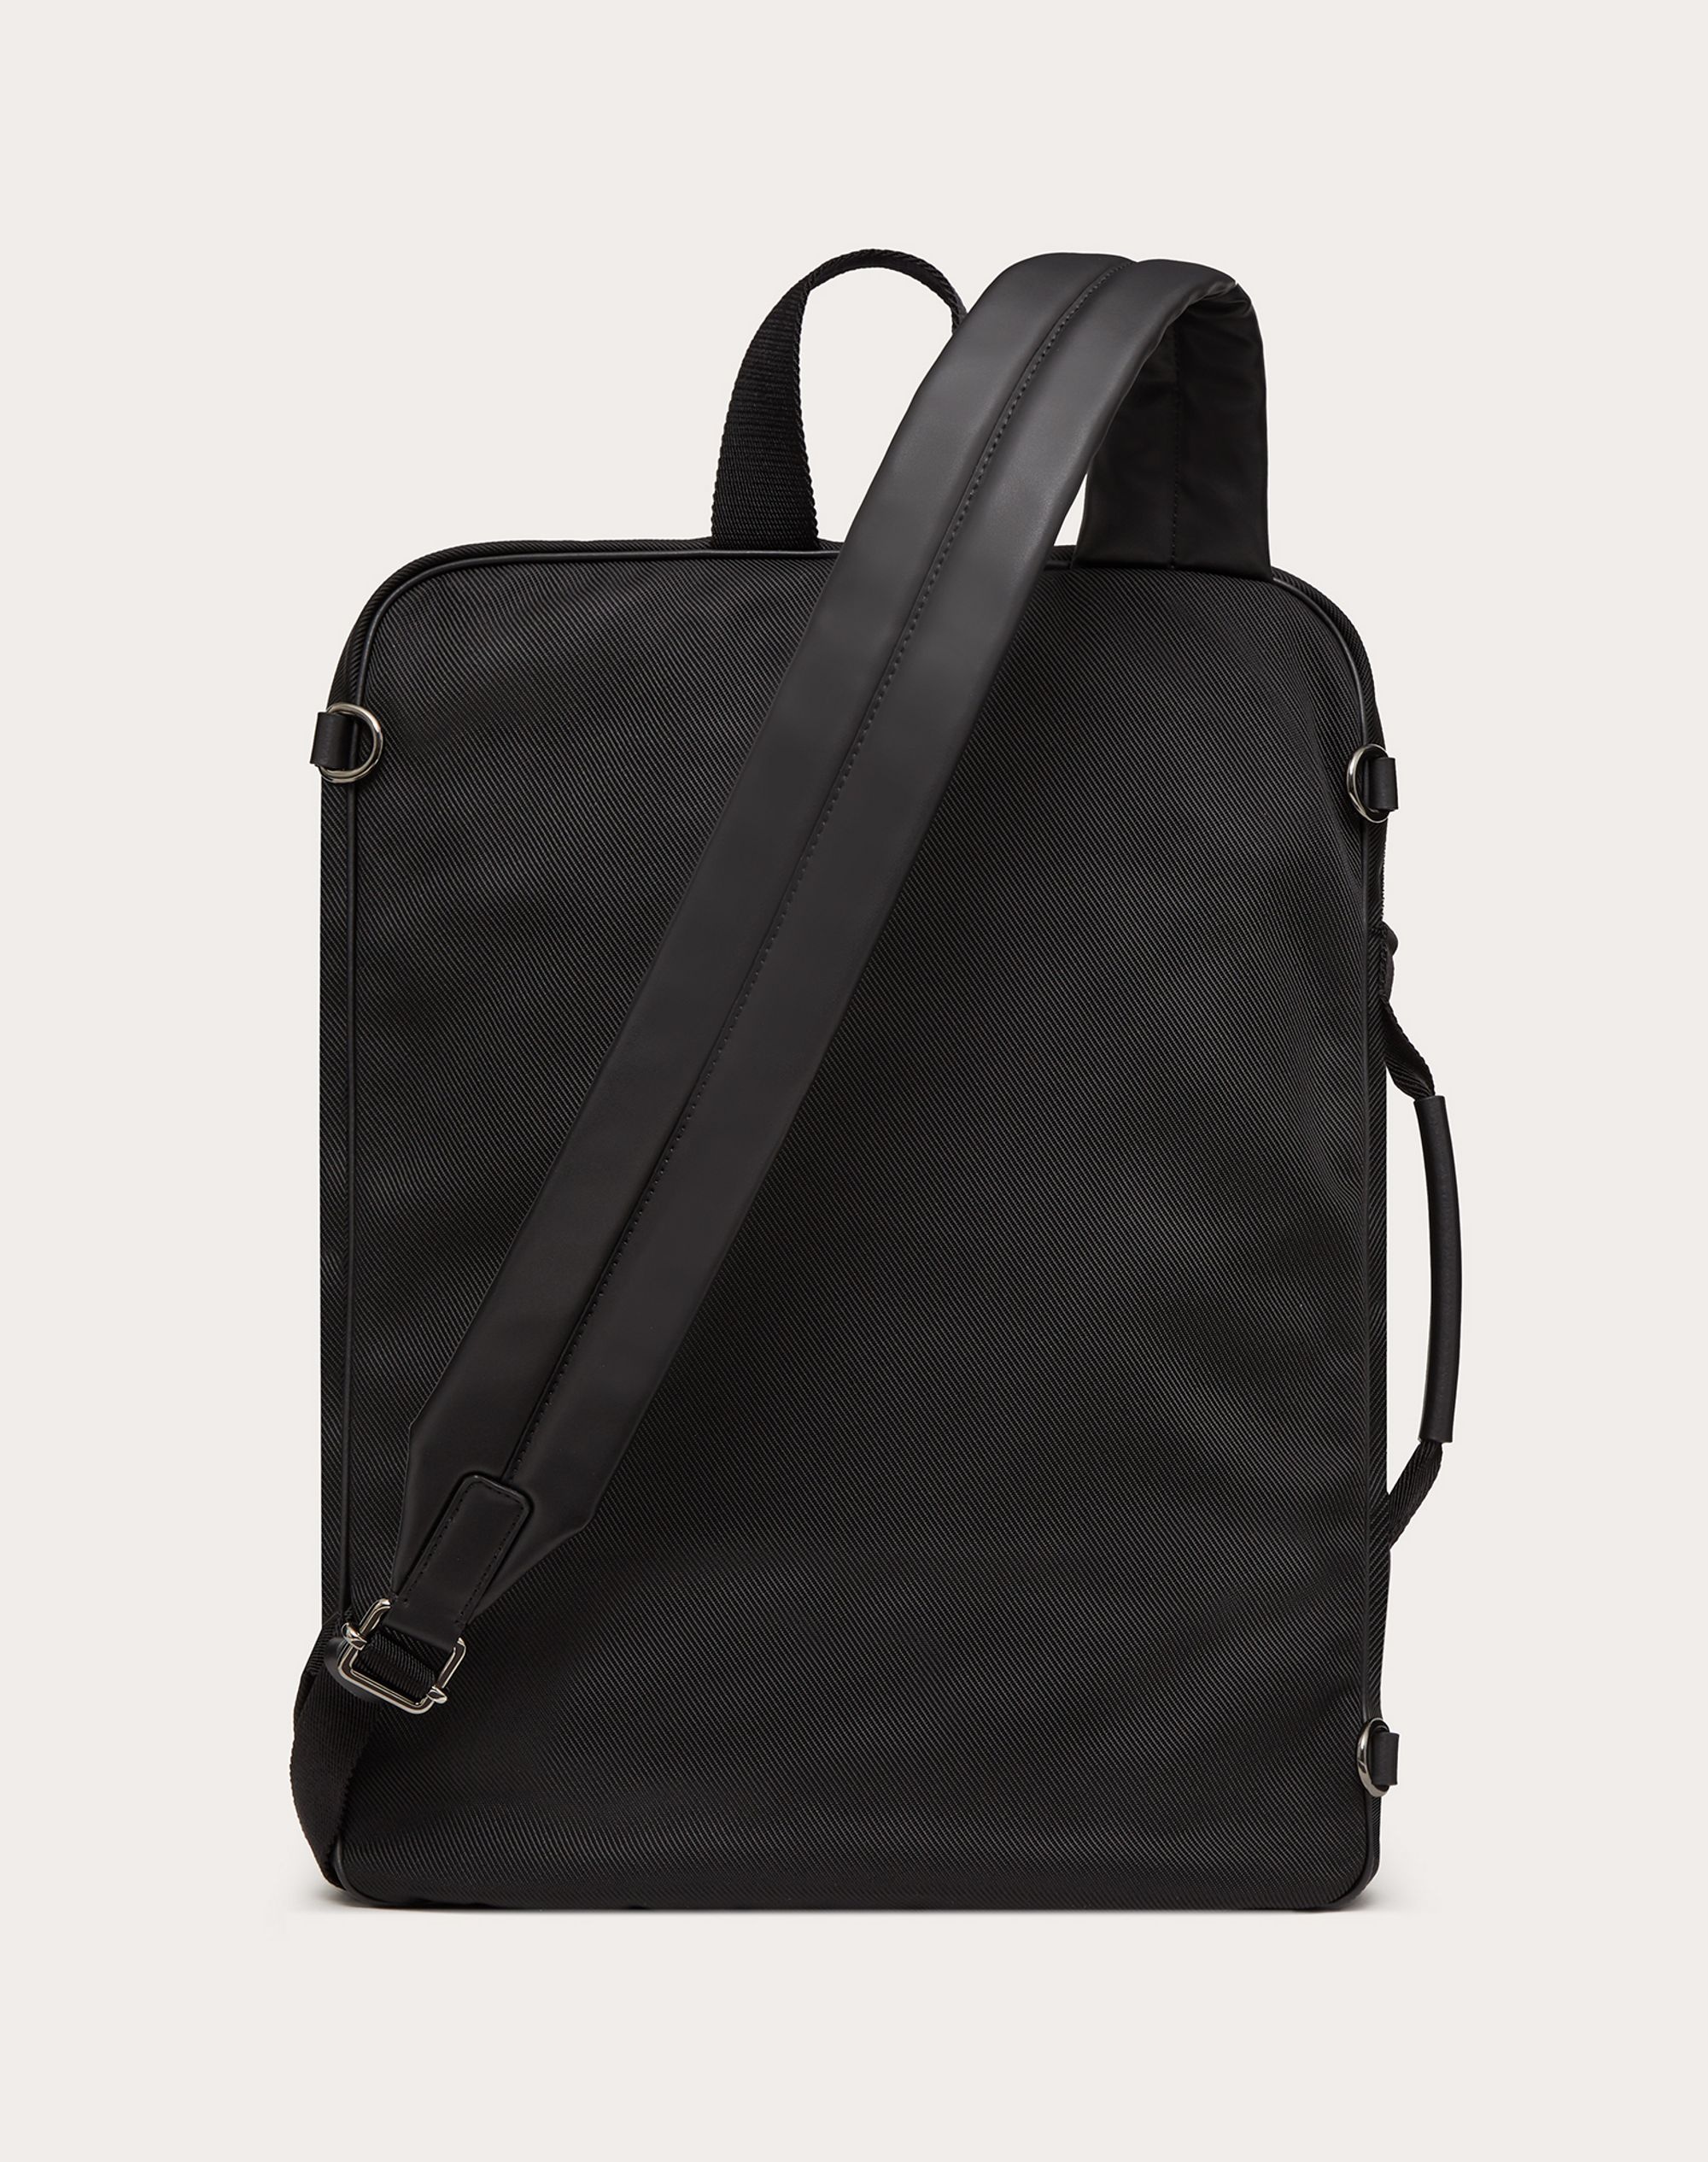 Supervee Backpack in Nylon - 3